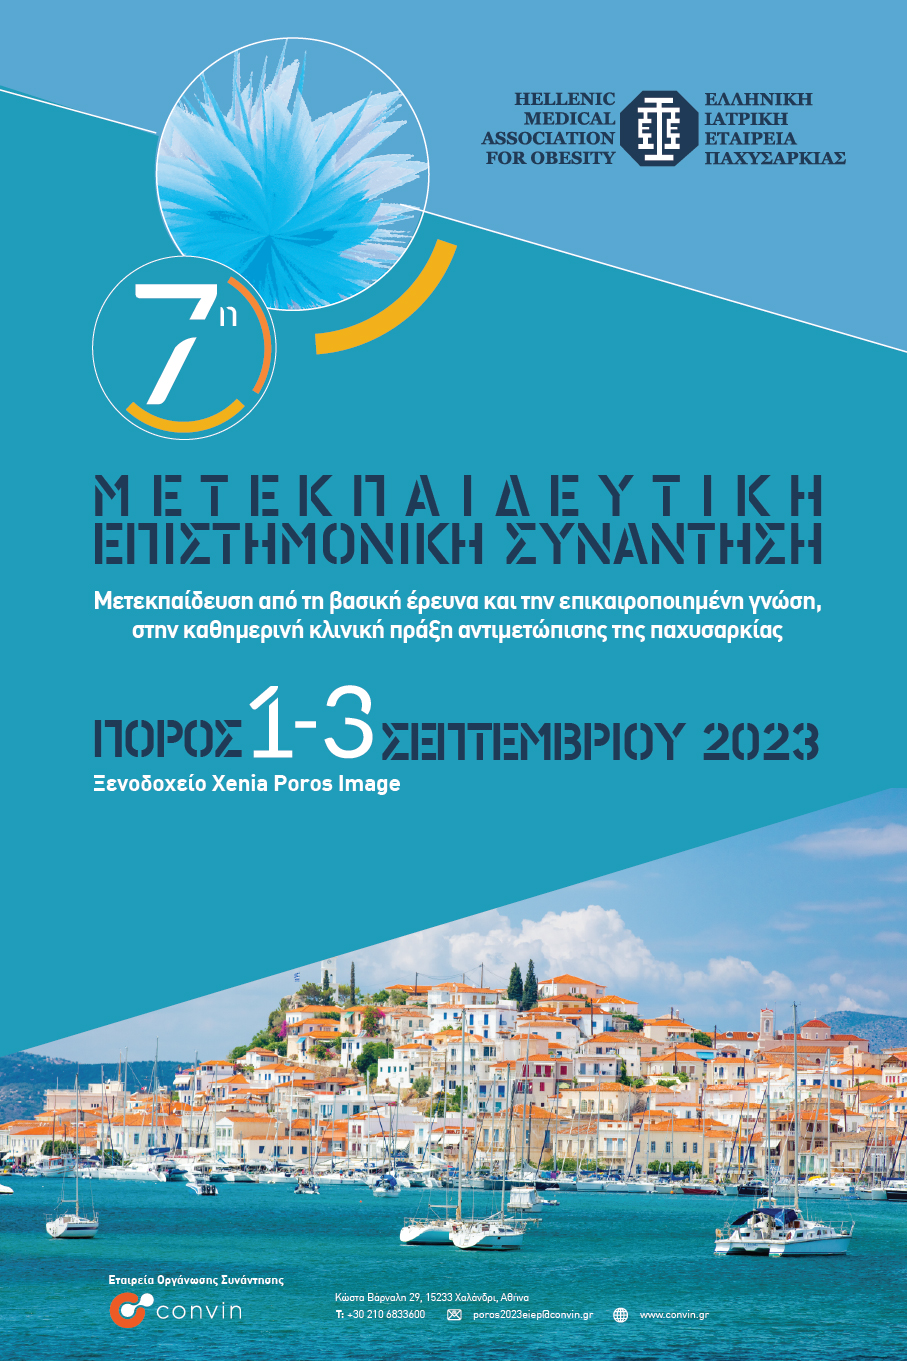 7η Μετεκπαιδευτική Επιστημονική Συνάντηση Ελληνικής Ιατρικής Εταιρείας Παχυσαρκίας